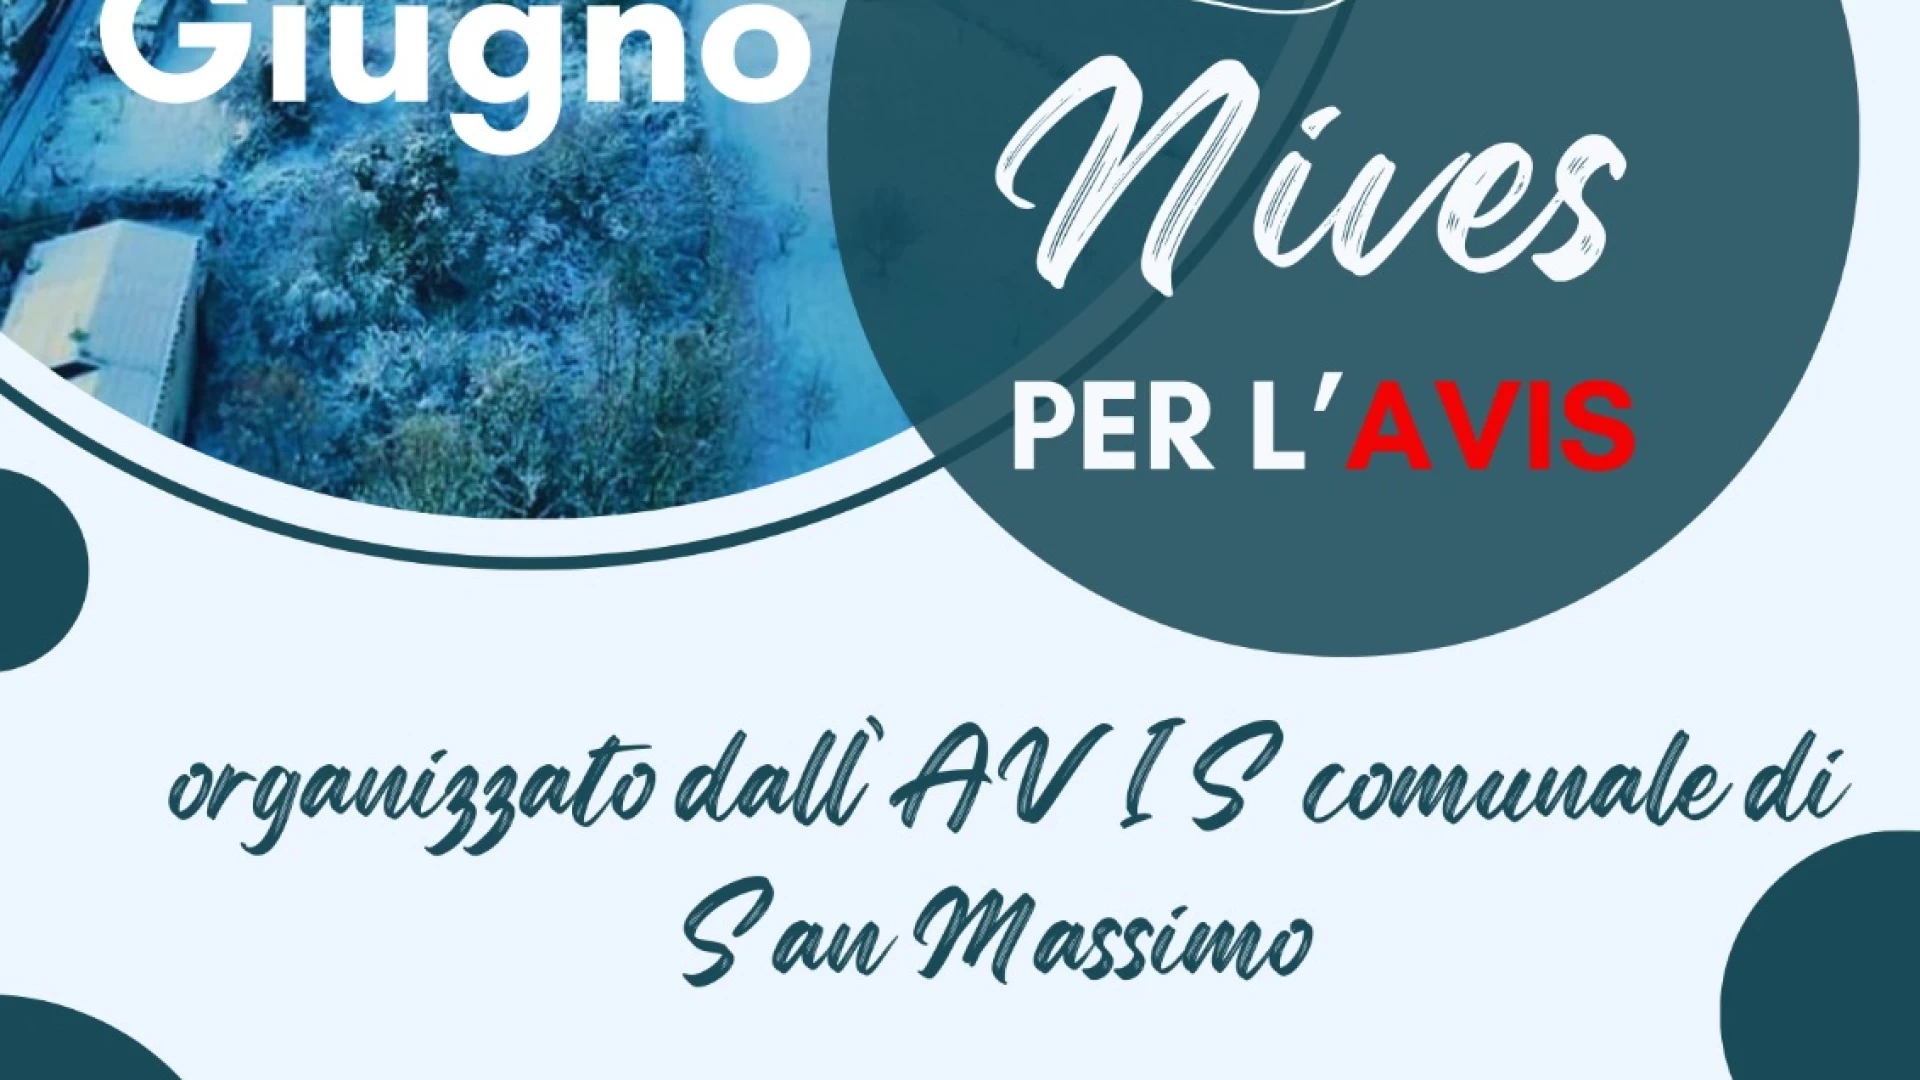 Solidarietà e donazione a San Massimo con Nives per l'Avis